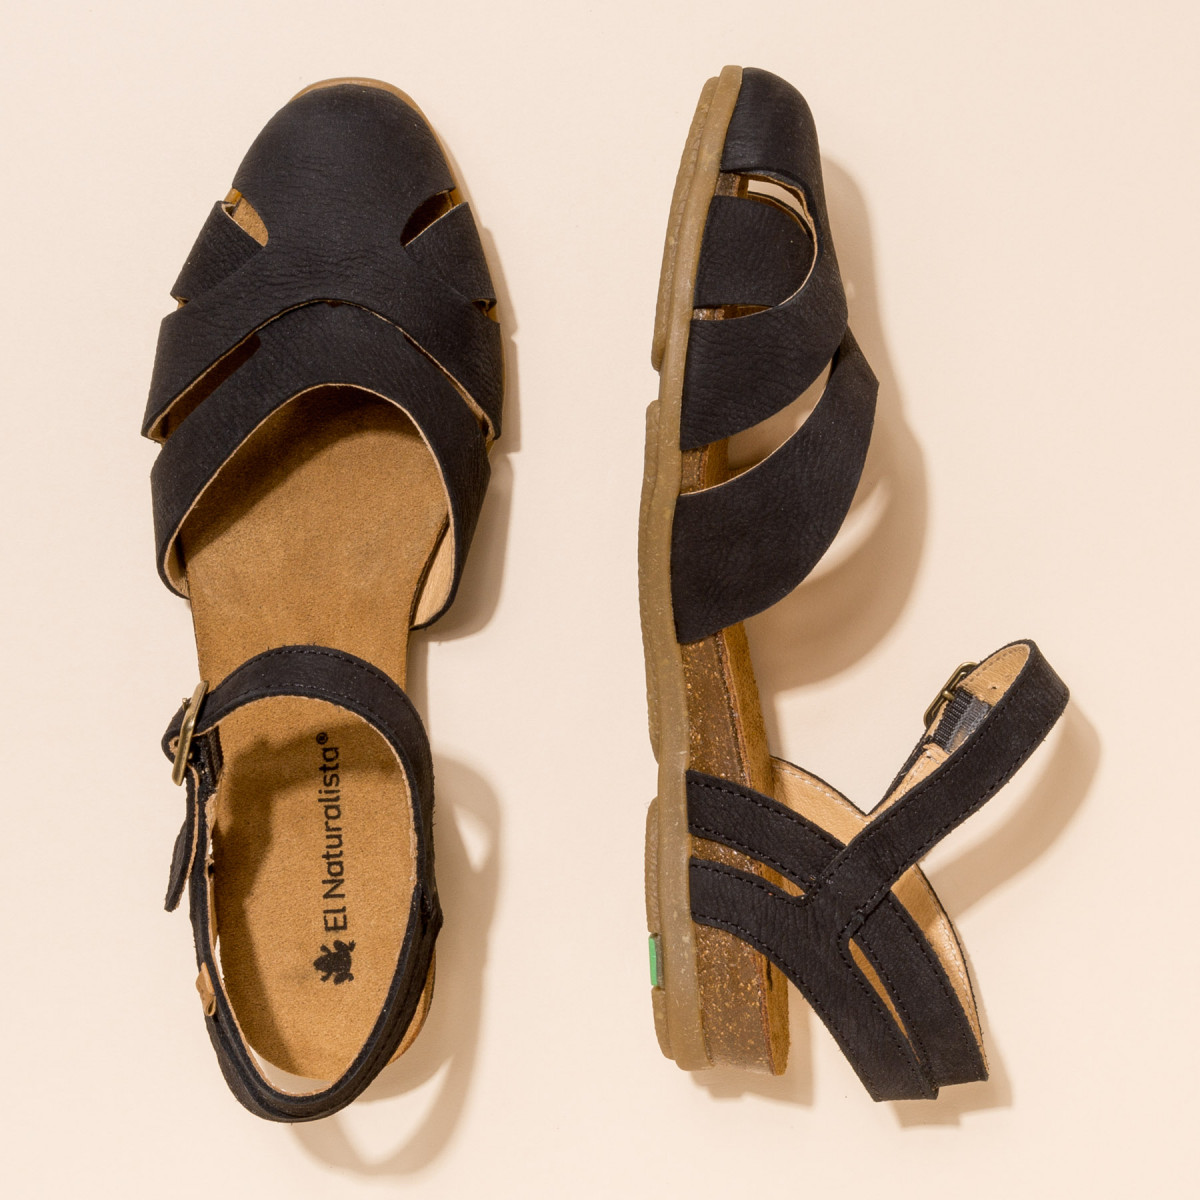 Sandales confortables plates bout fermé en cuir doux - Noir - El naturalista